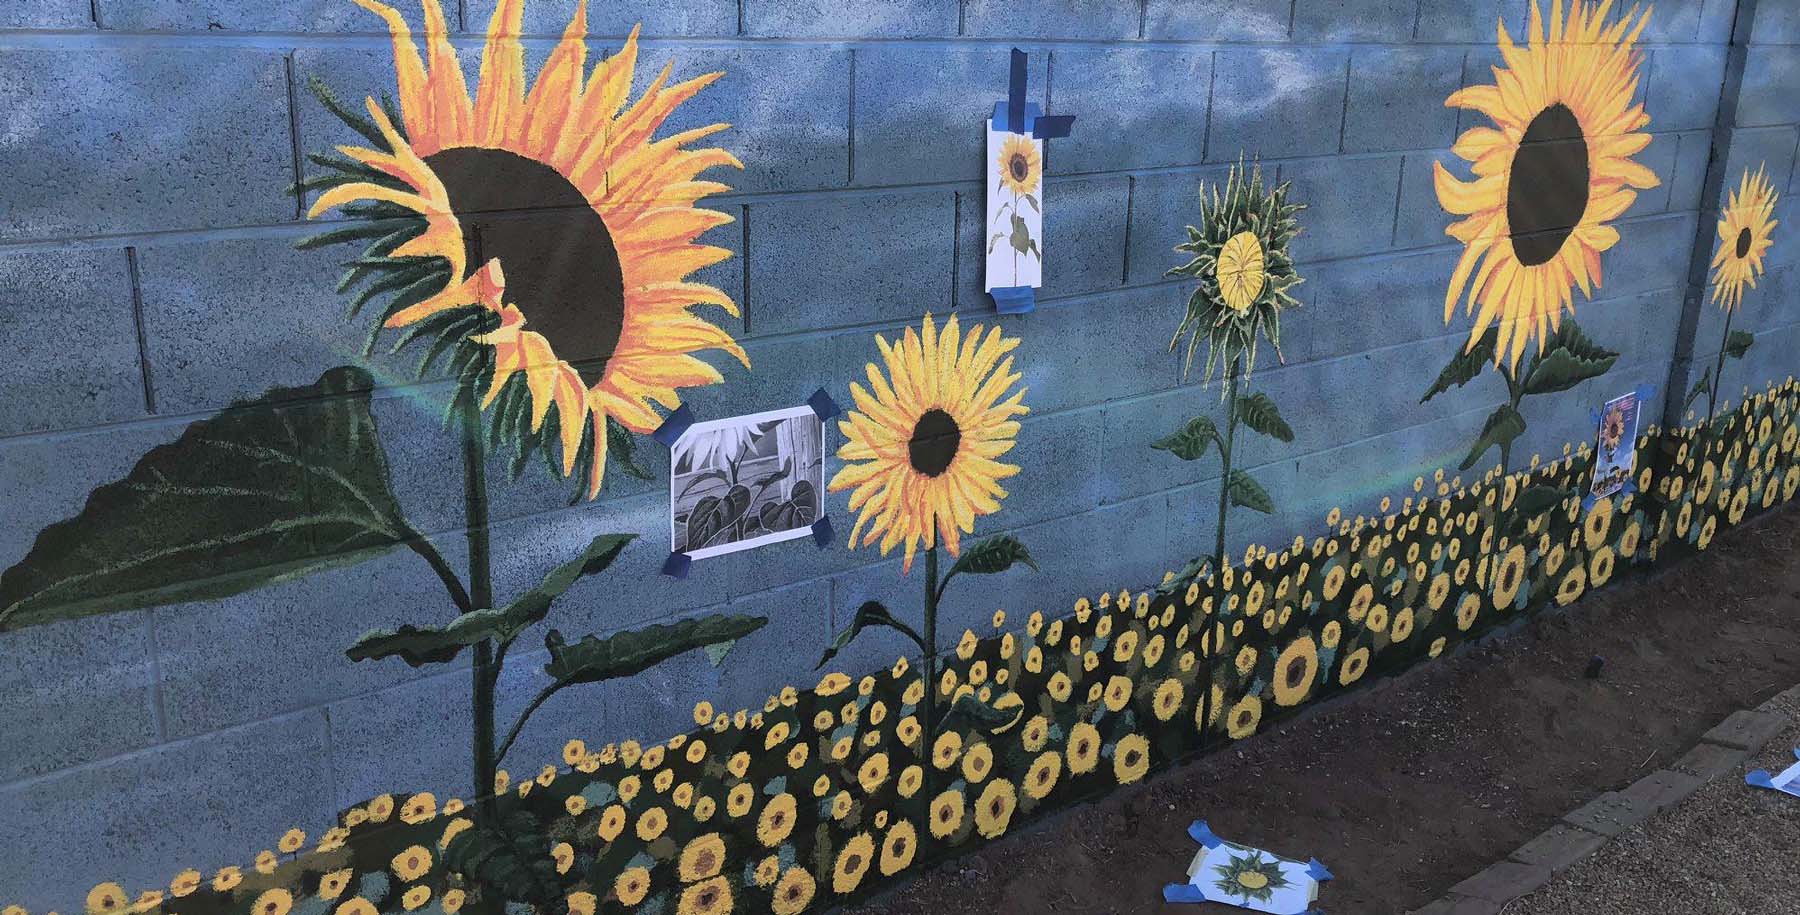 Painting the Sunflower Mural – VanDyke Gardens